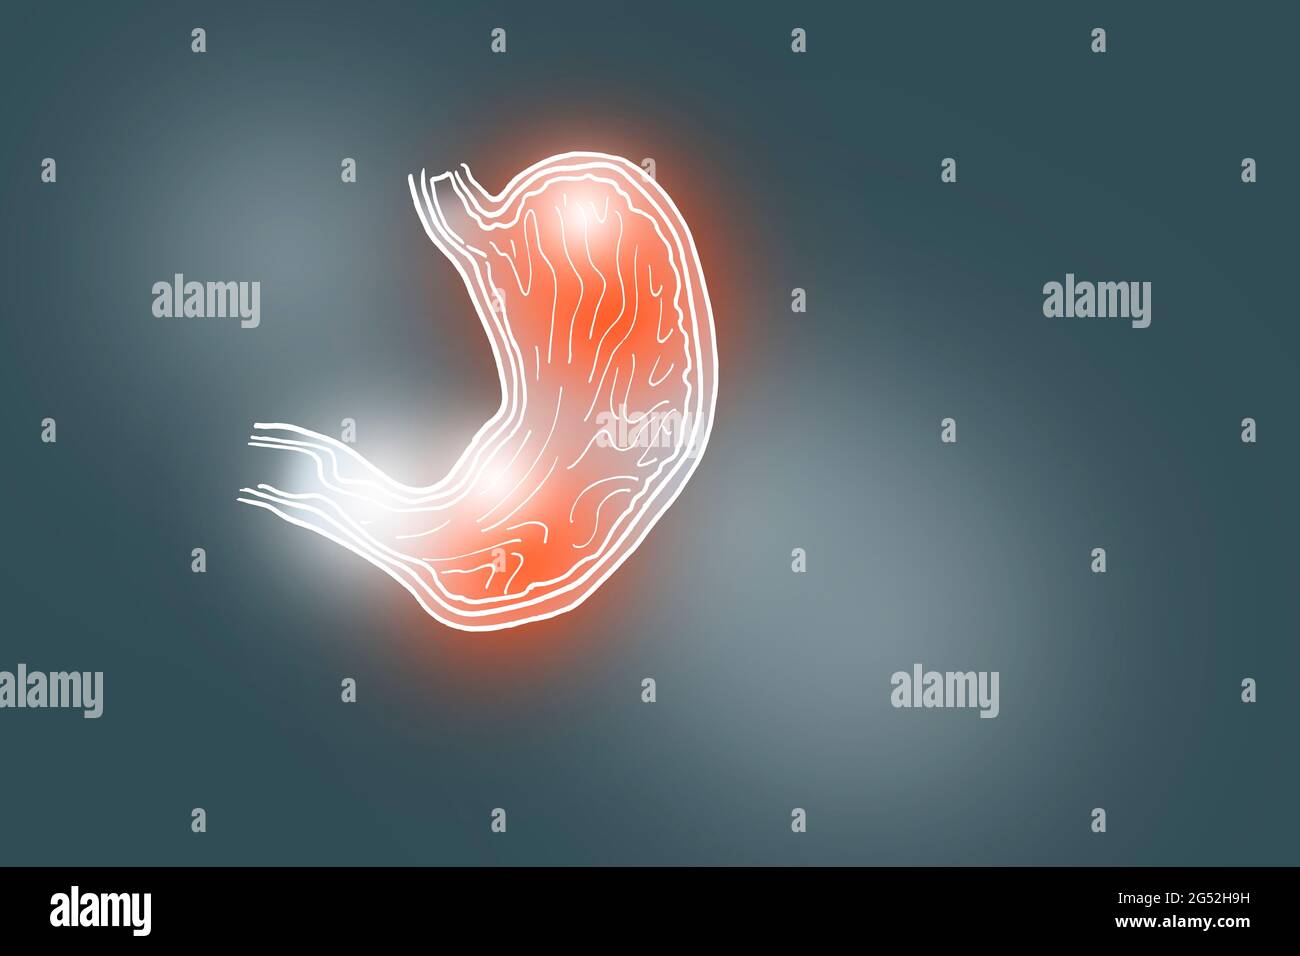 Illustrazione Handrawn dello stomaco umano su sfondo grigio scuro. Set medico-scientifico con i principali organi umani con spazio di copia vuoto per il testo Foto Stock